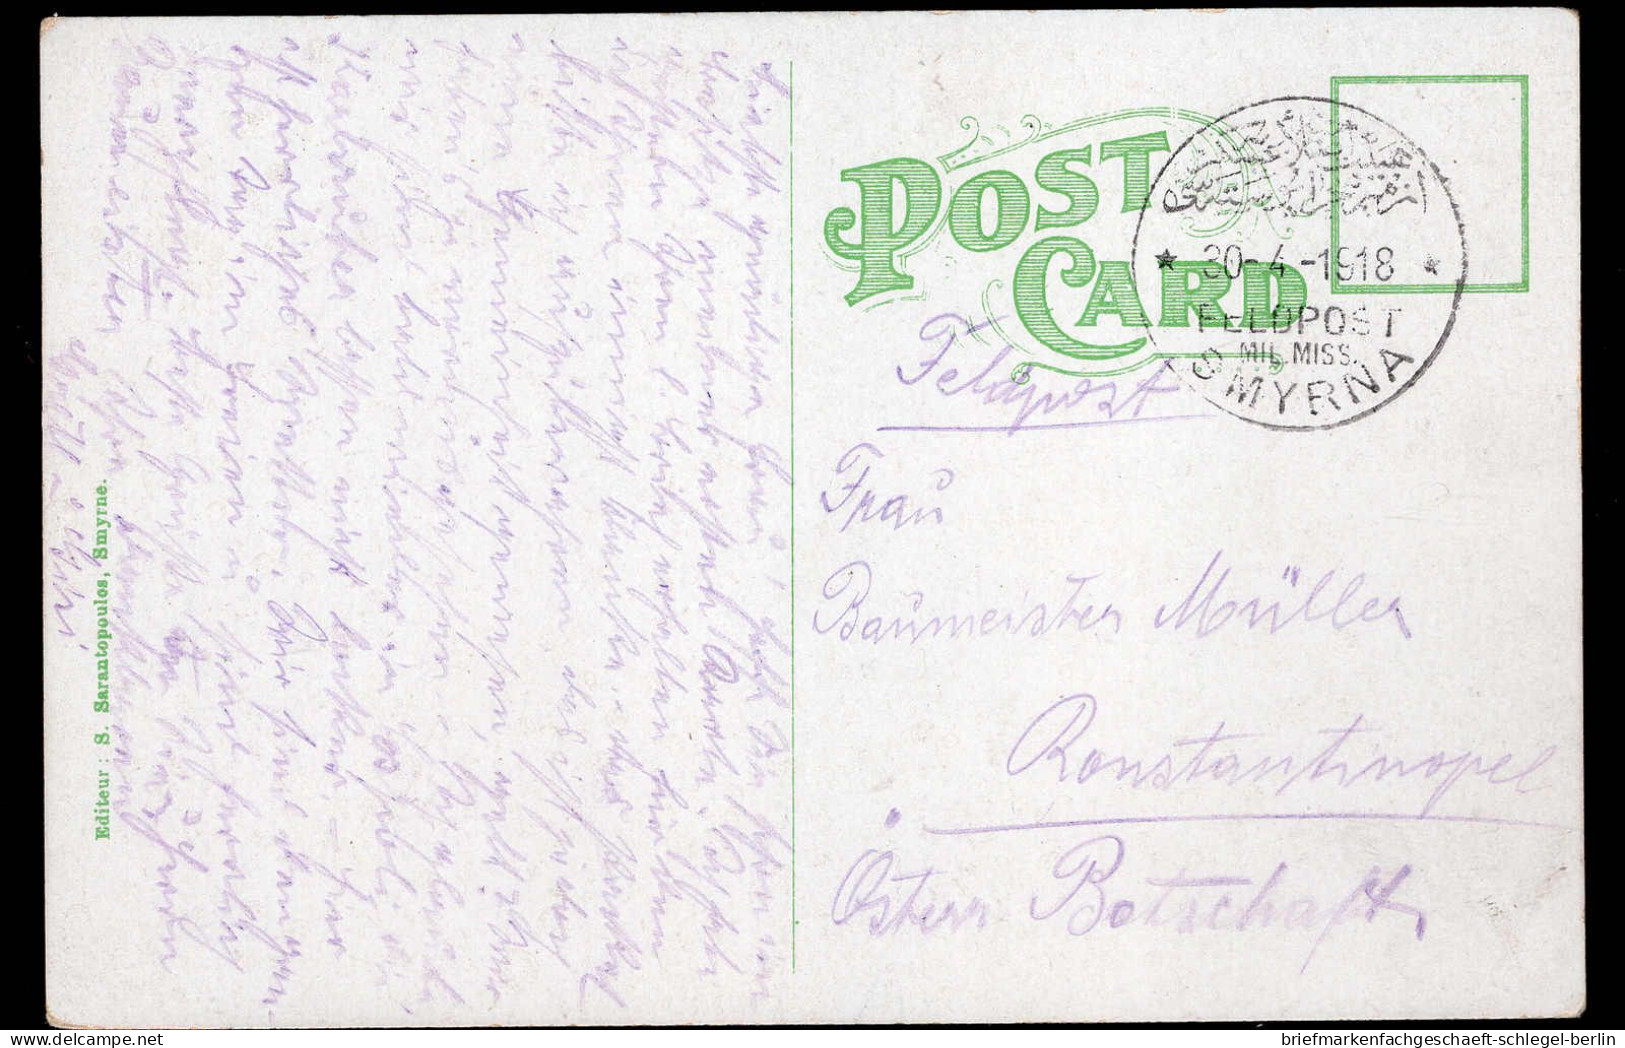 Deutsche Auslandspost Türkei, 1918, Brief - Morocco (offices)